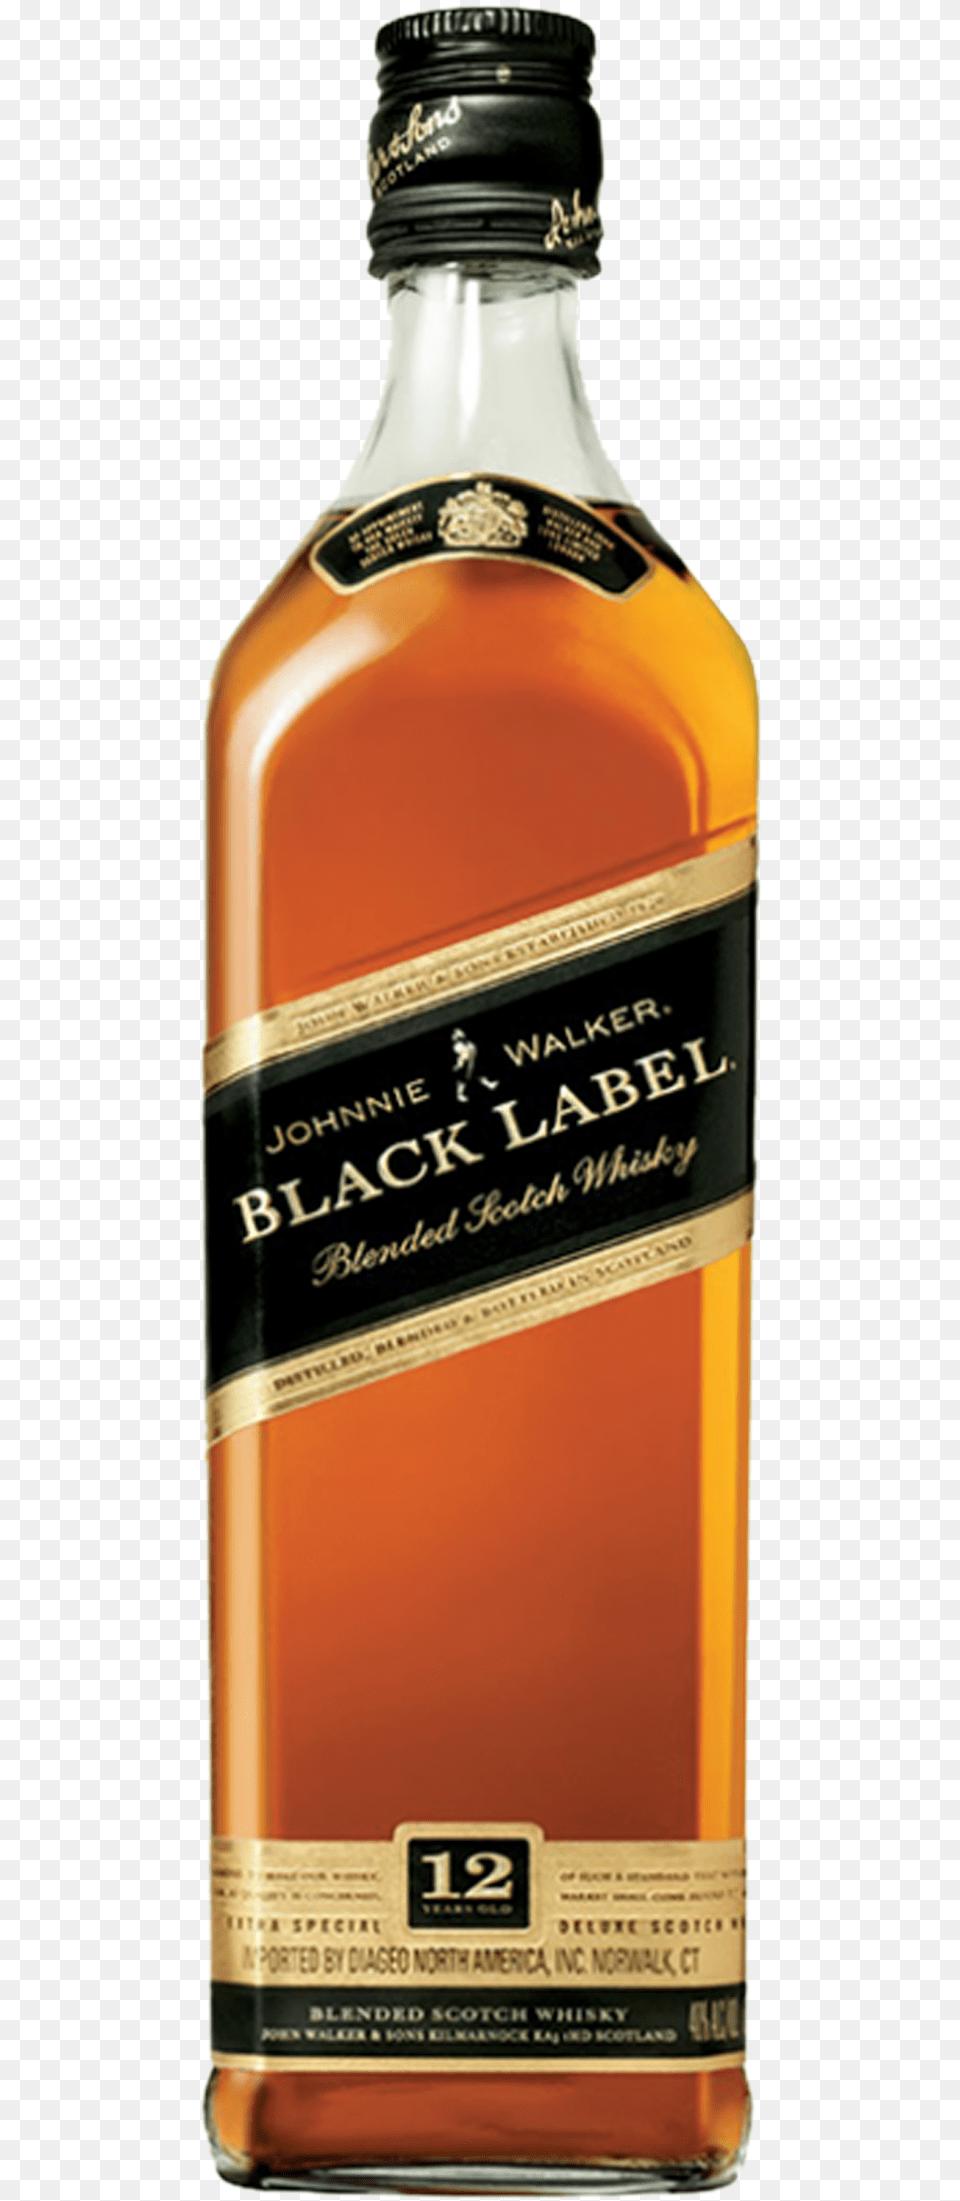 Johnnie Walker Black Label Label, Alcohol, Beverage, Liquor, Whisky Free Transparent Png